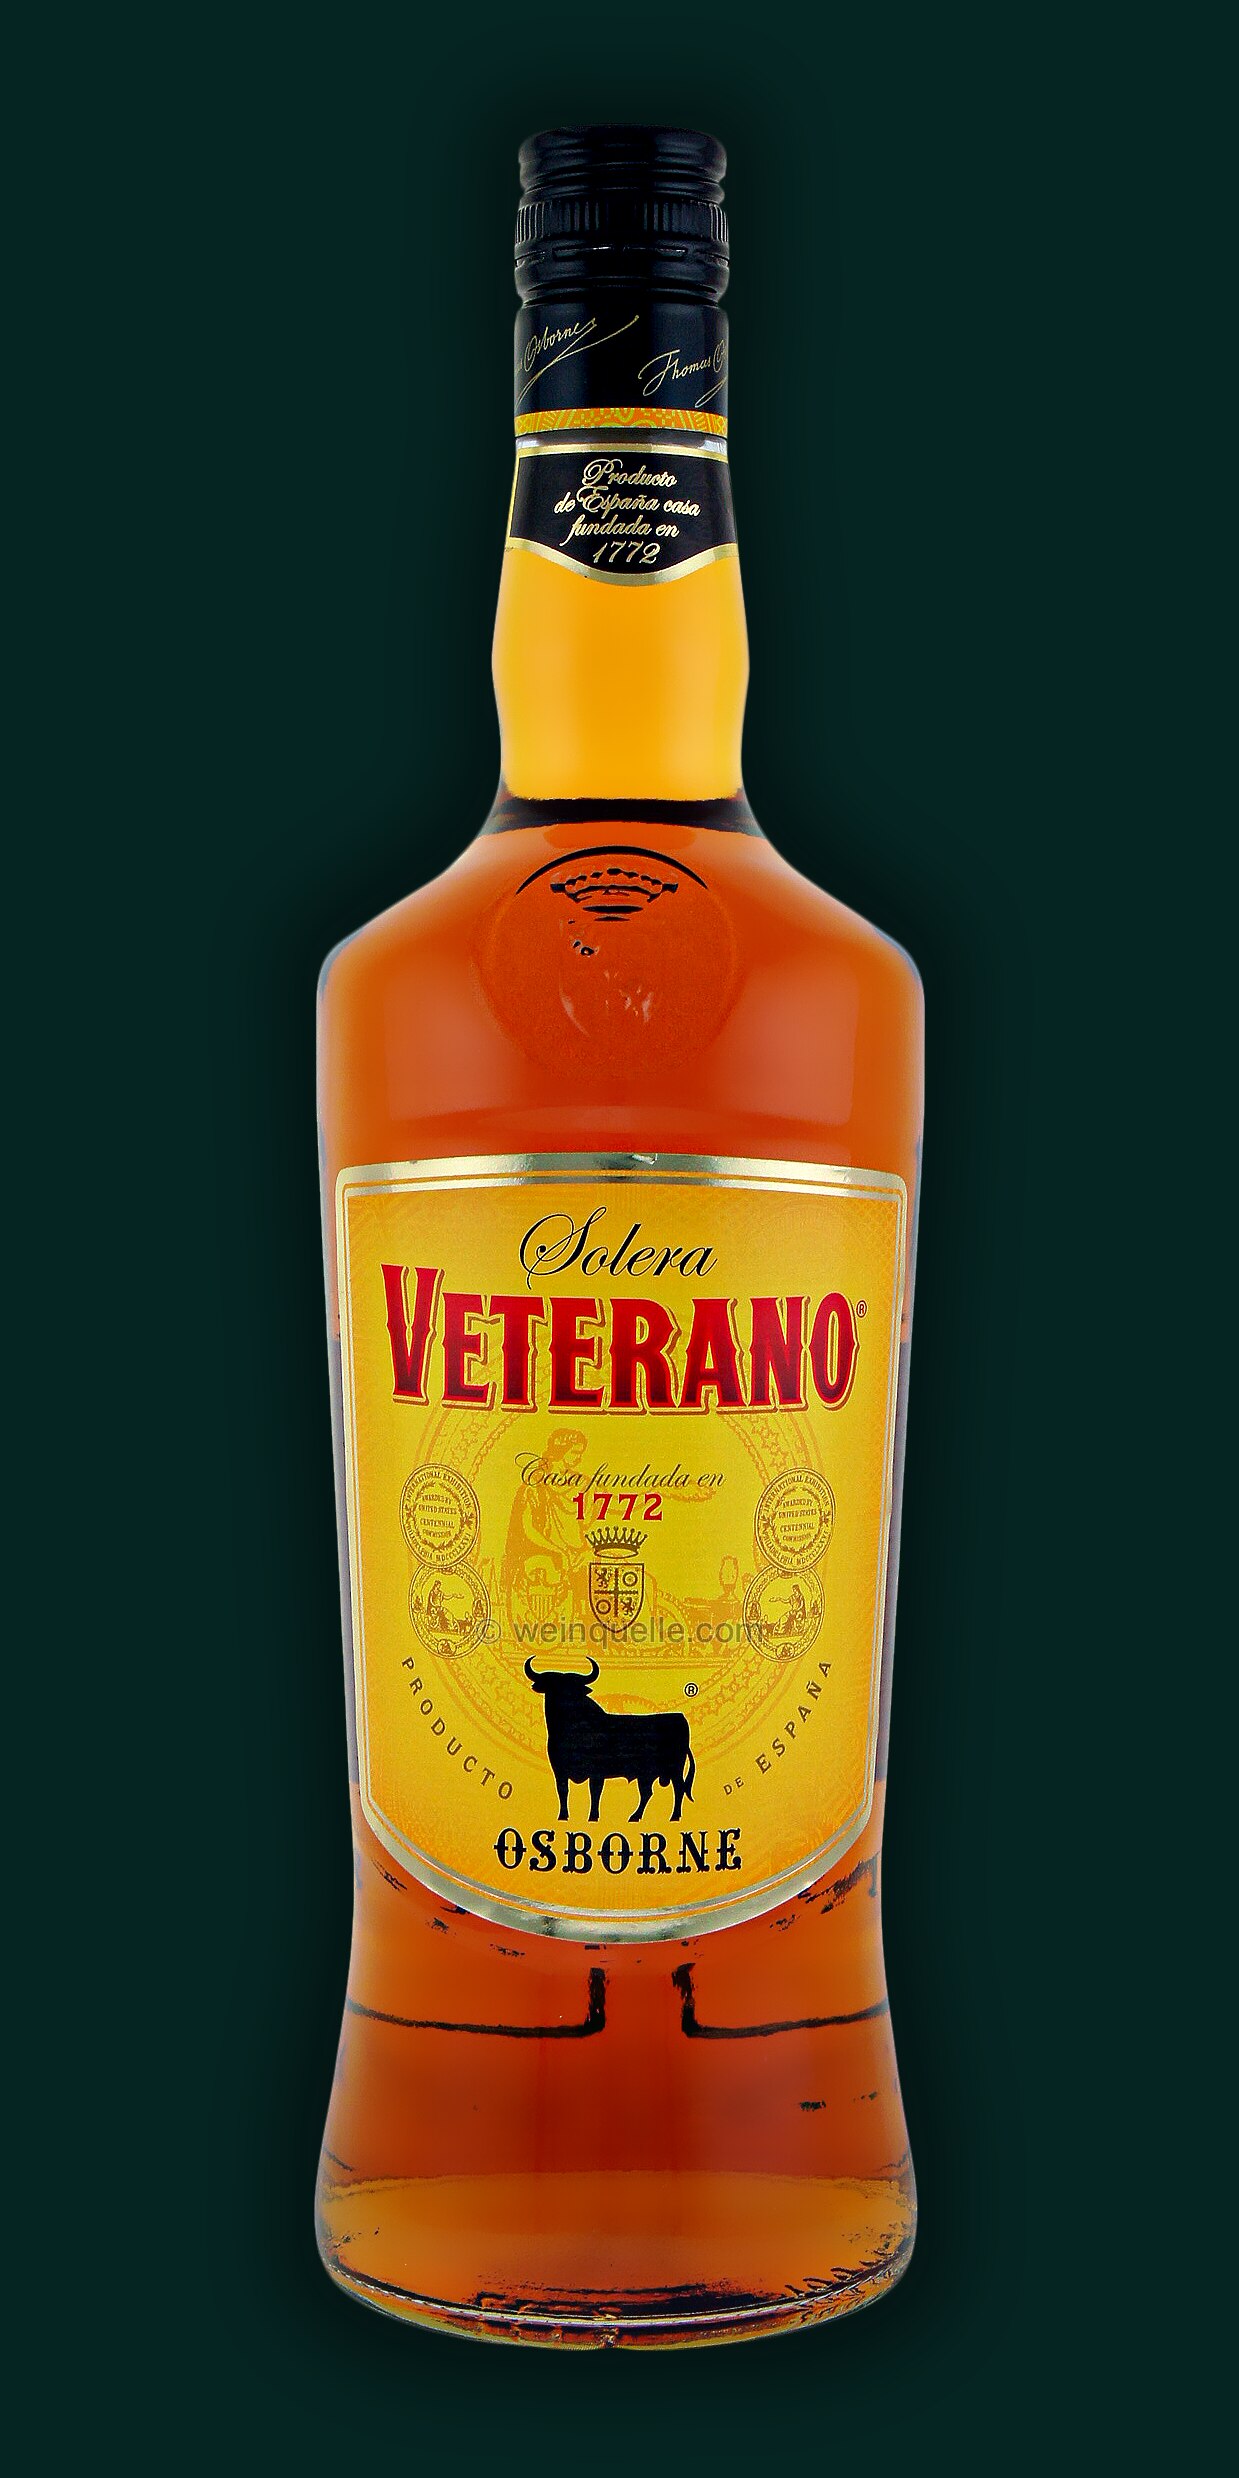 Veterano 1,0 Spanische Lühmann Weinquelle Liter Osborne - Spirituose